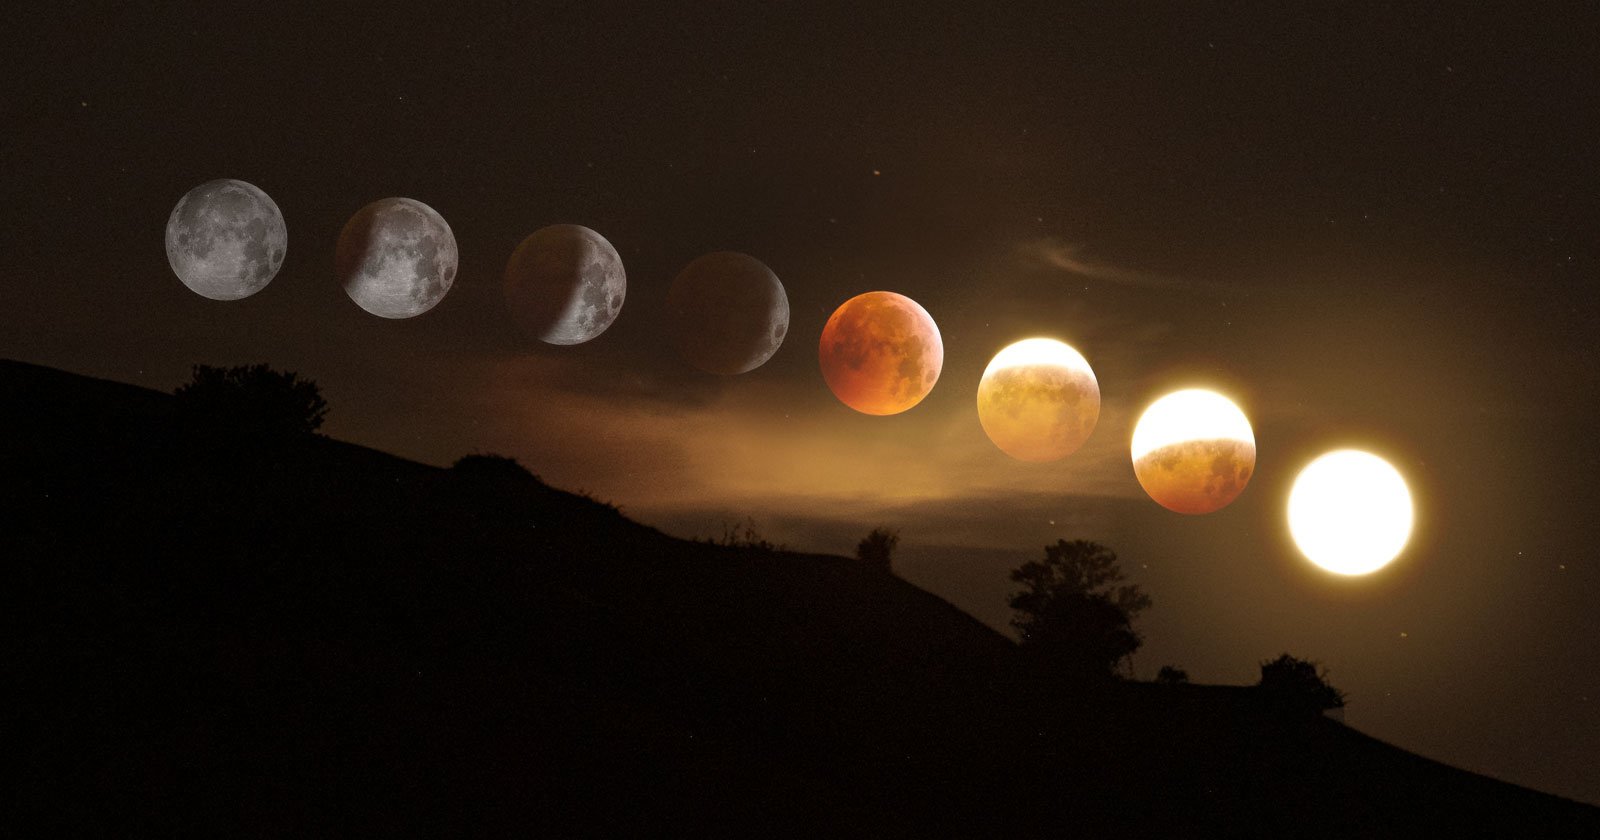 How should I set my camera for a lunar eclipse?